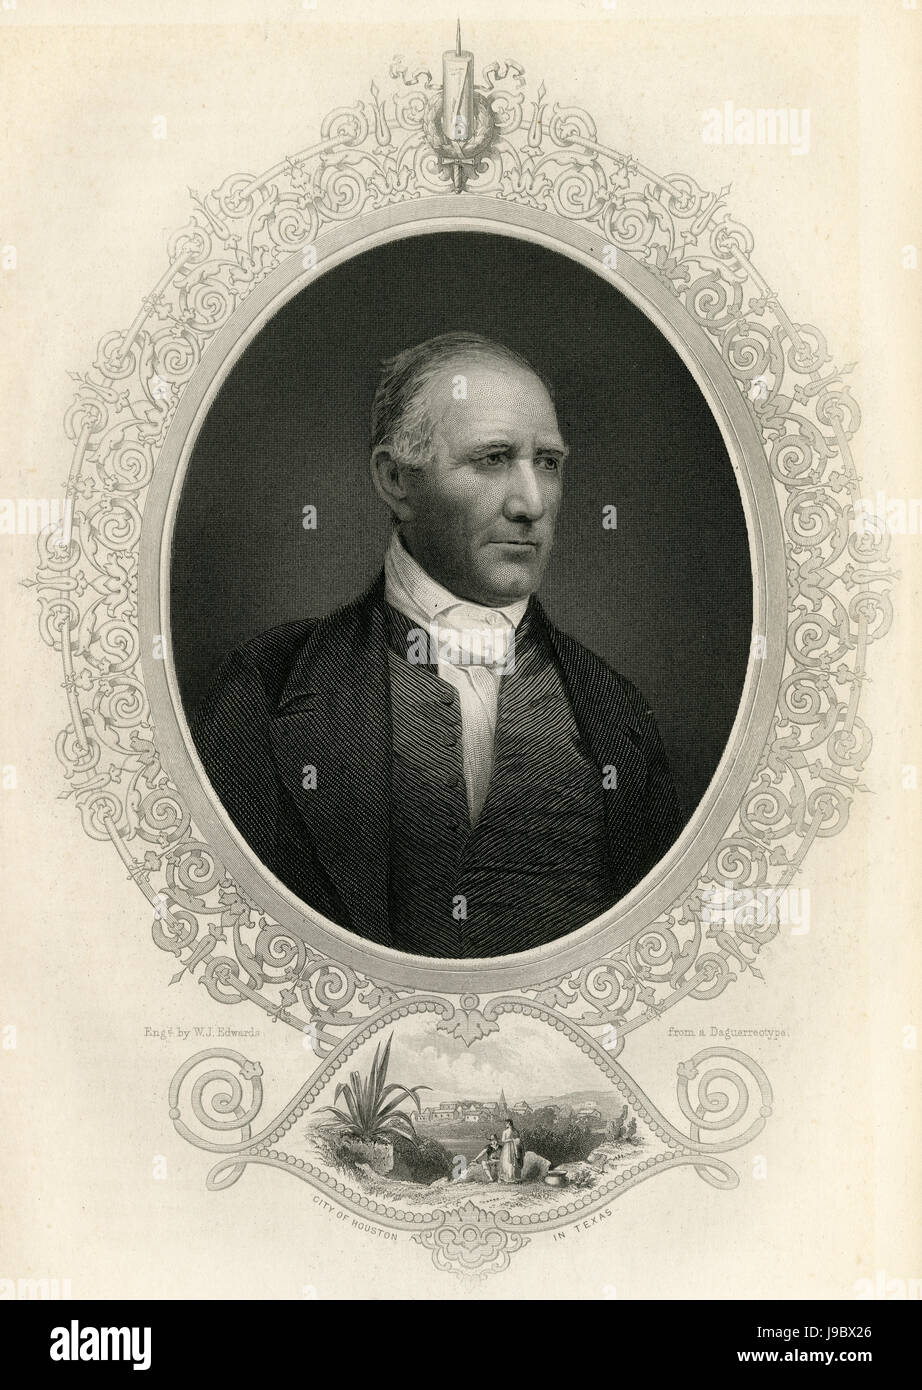 C Antique1860 gravure, Samuel 'Sam' Houston. Samuel Houston (1793-1863) était un homme politique américain et un soldat, mieux connu pour son rôle dans le Texas aux États-Unis comme constituant l'état. SOURCE : gravure originale. Banque D'Images